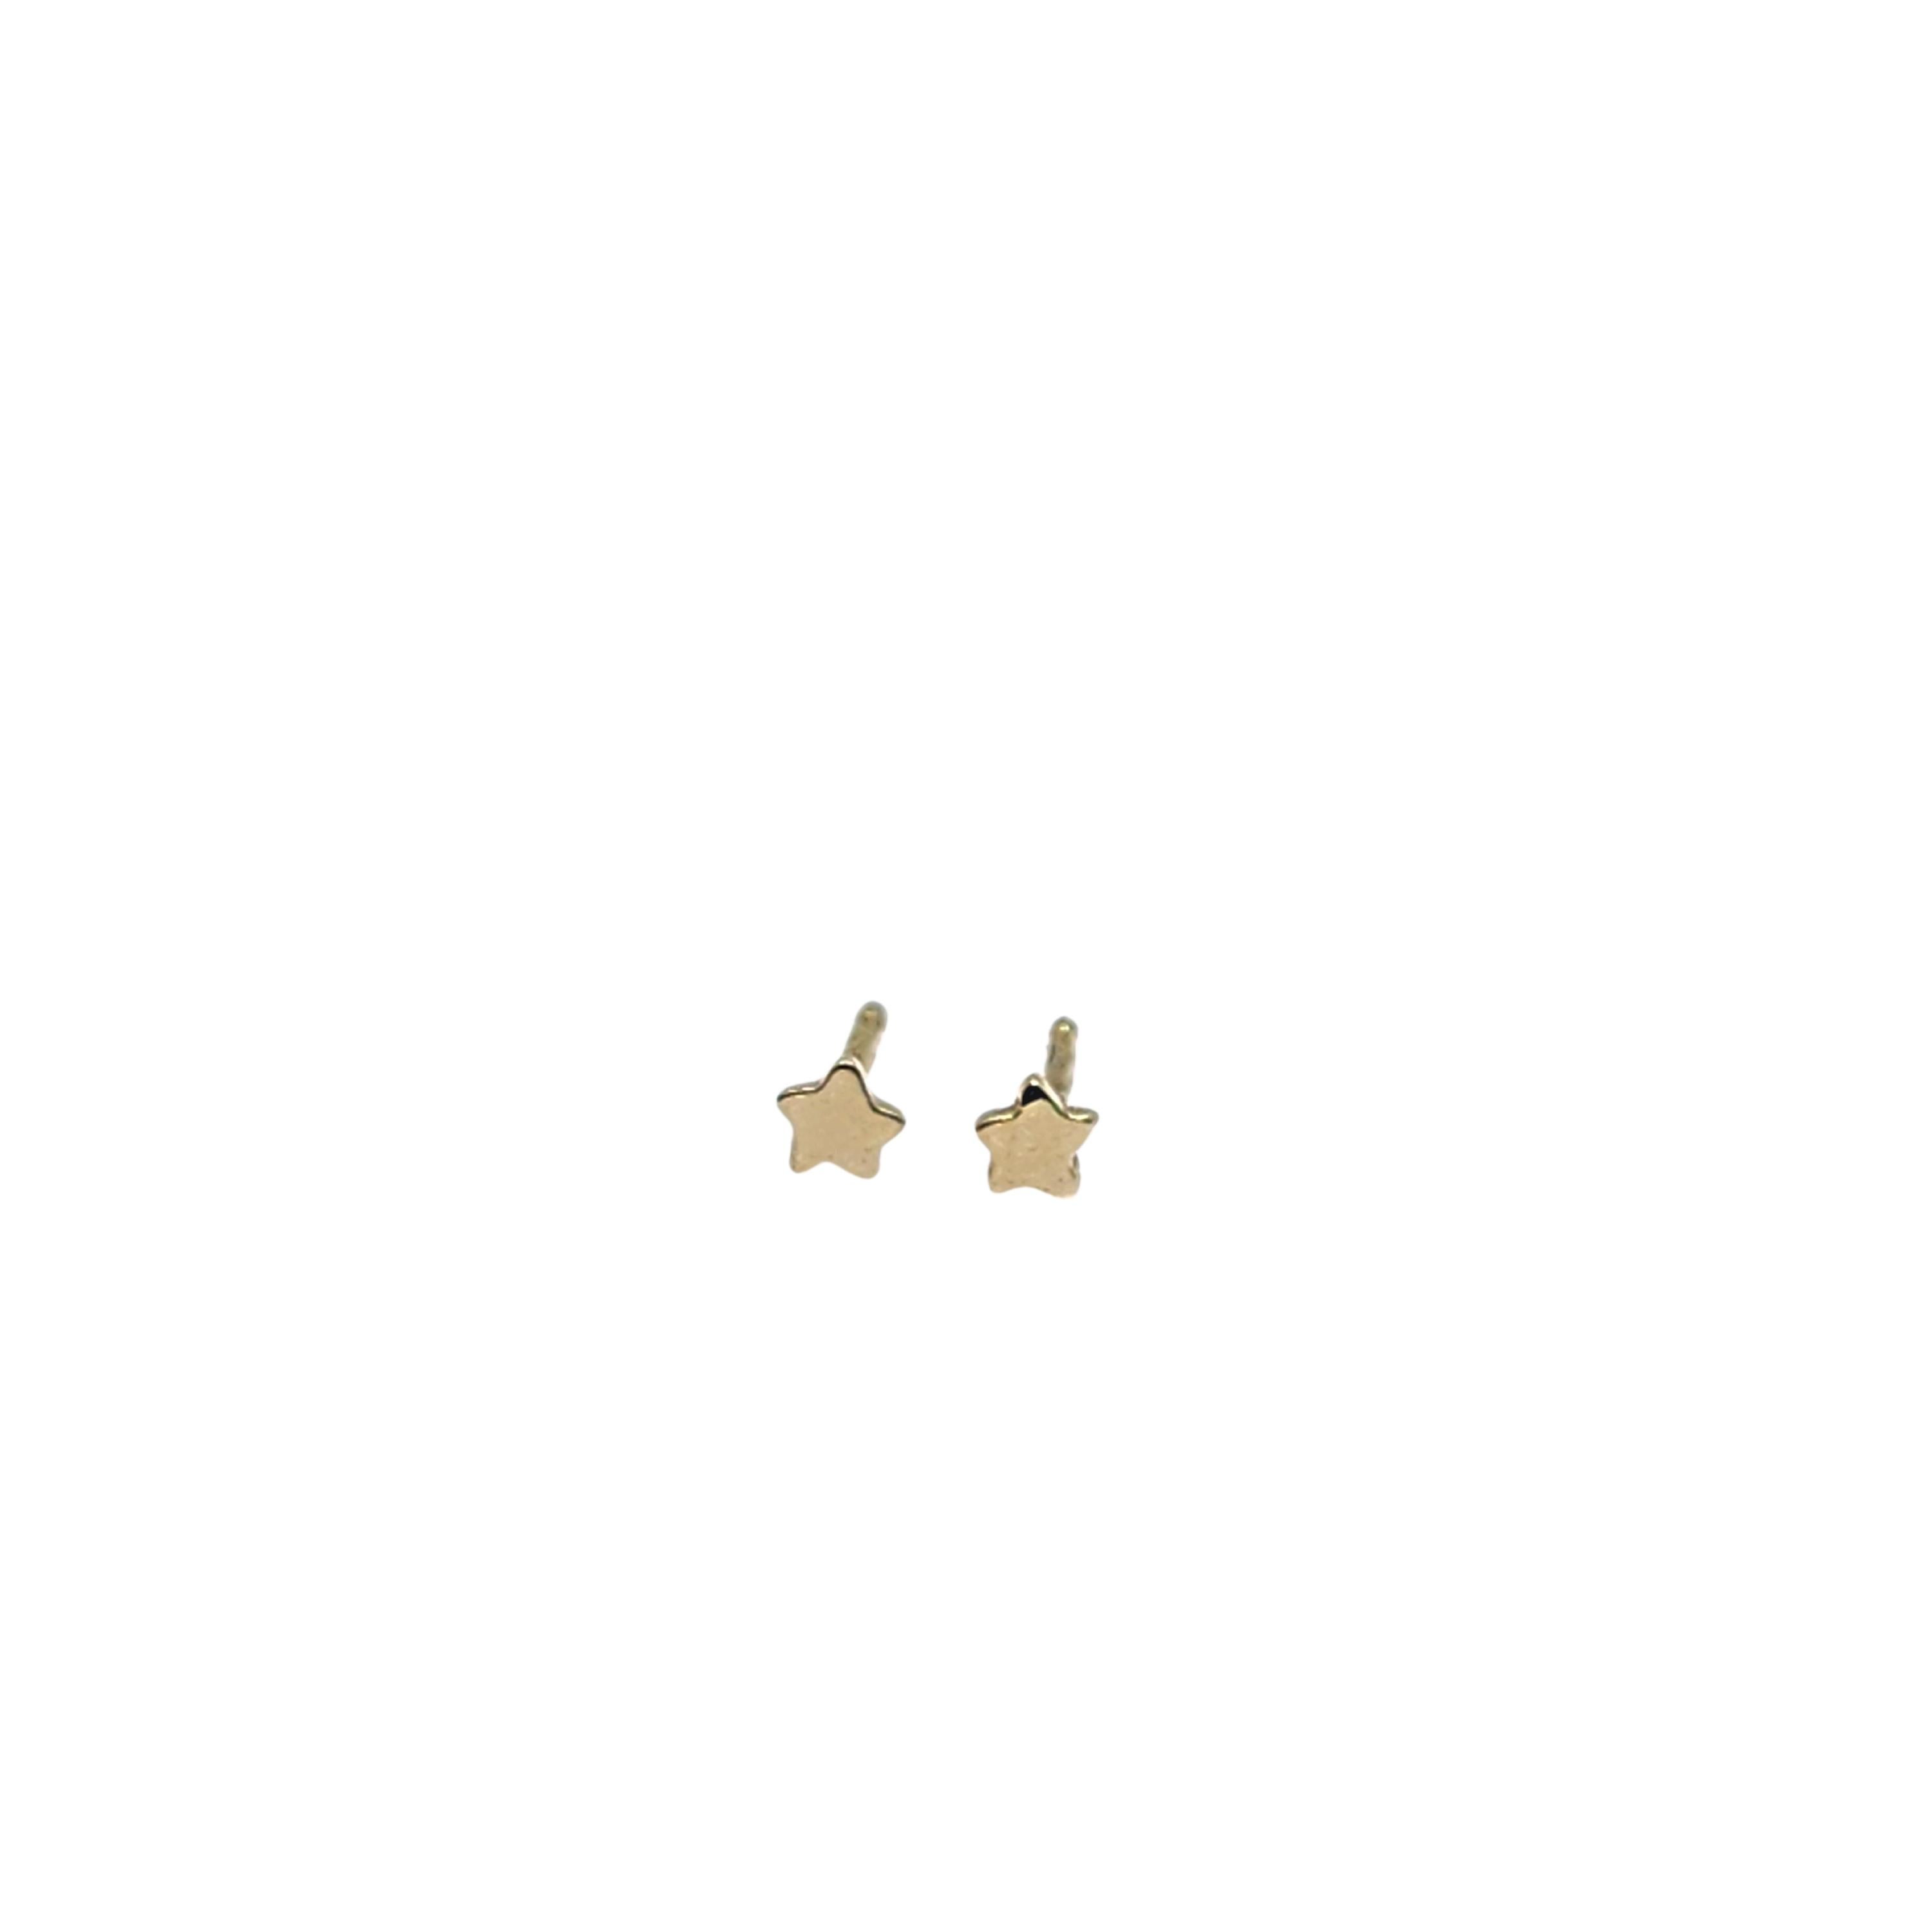 Modern Alison Nagasue Star Power Mini Stud Earrings in 18K Gold For Sale